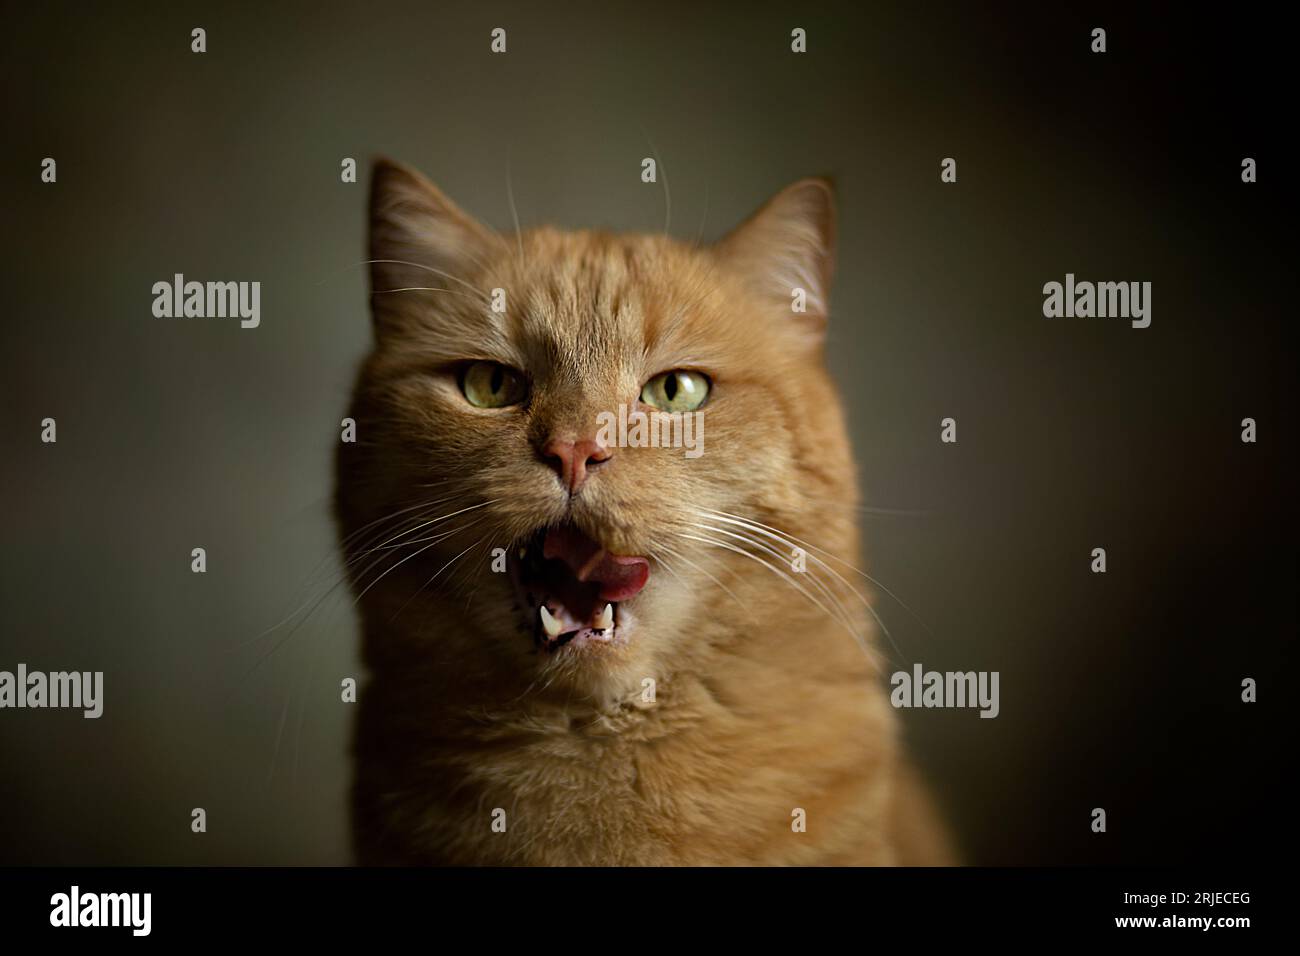 Photographie en gros plan de portrait gingembre chaton avec les yeux verts .chat hurlant et pense que c'est un tigre, chat hurlant comme un tigre ou un lion Banque D'Images